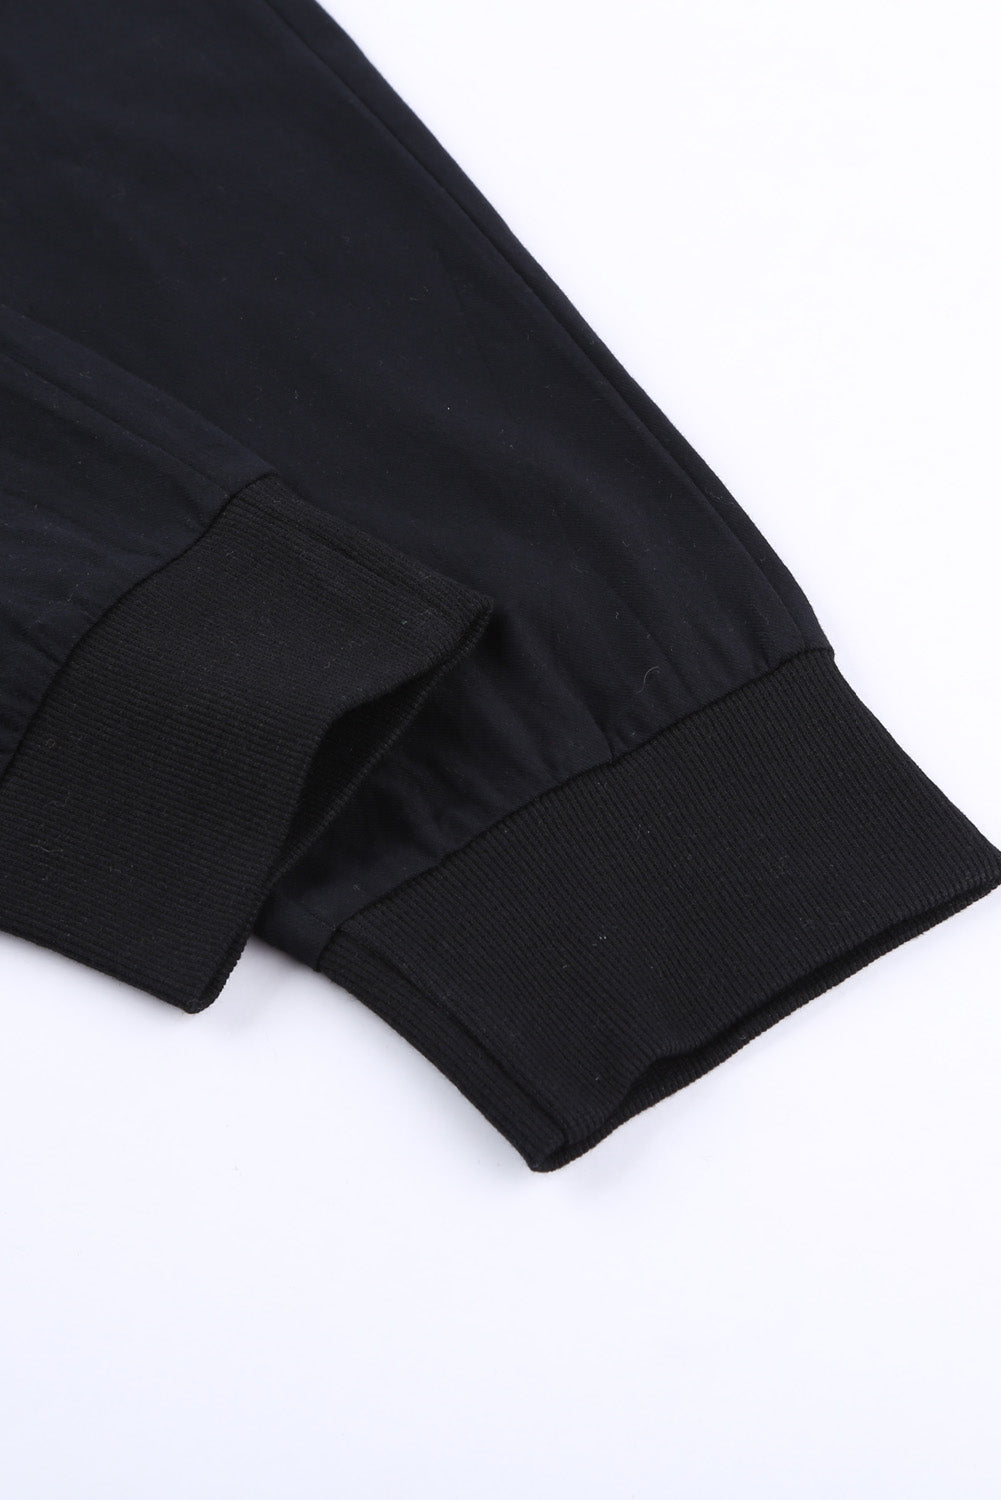 Pantaloni neri con tasche causali